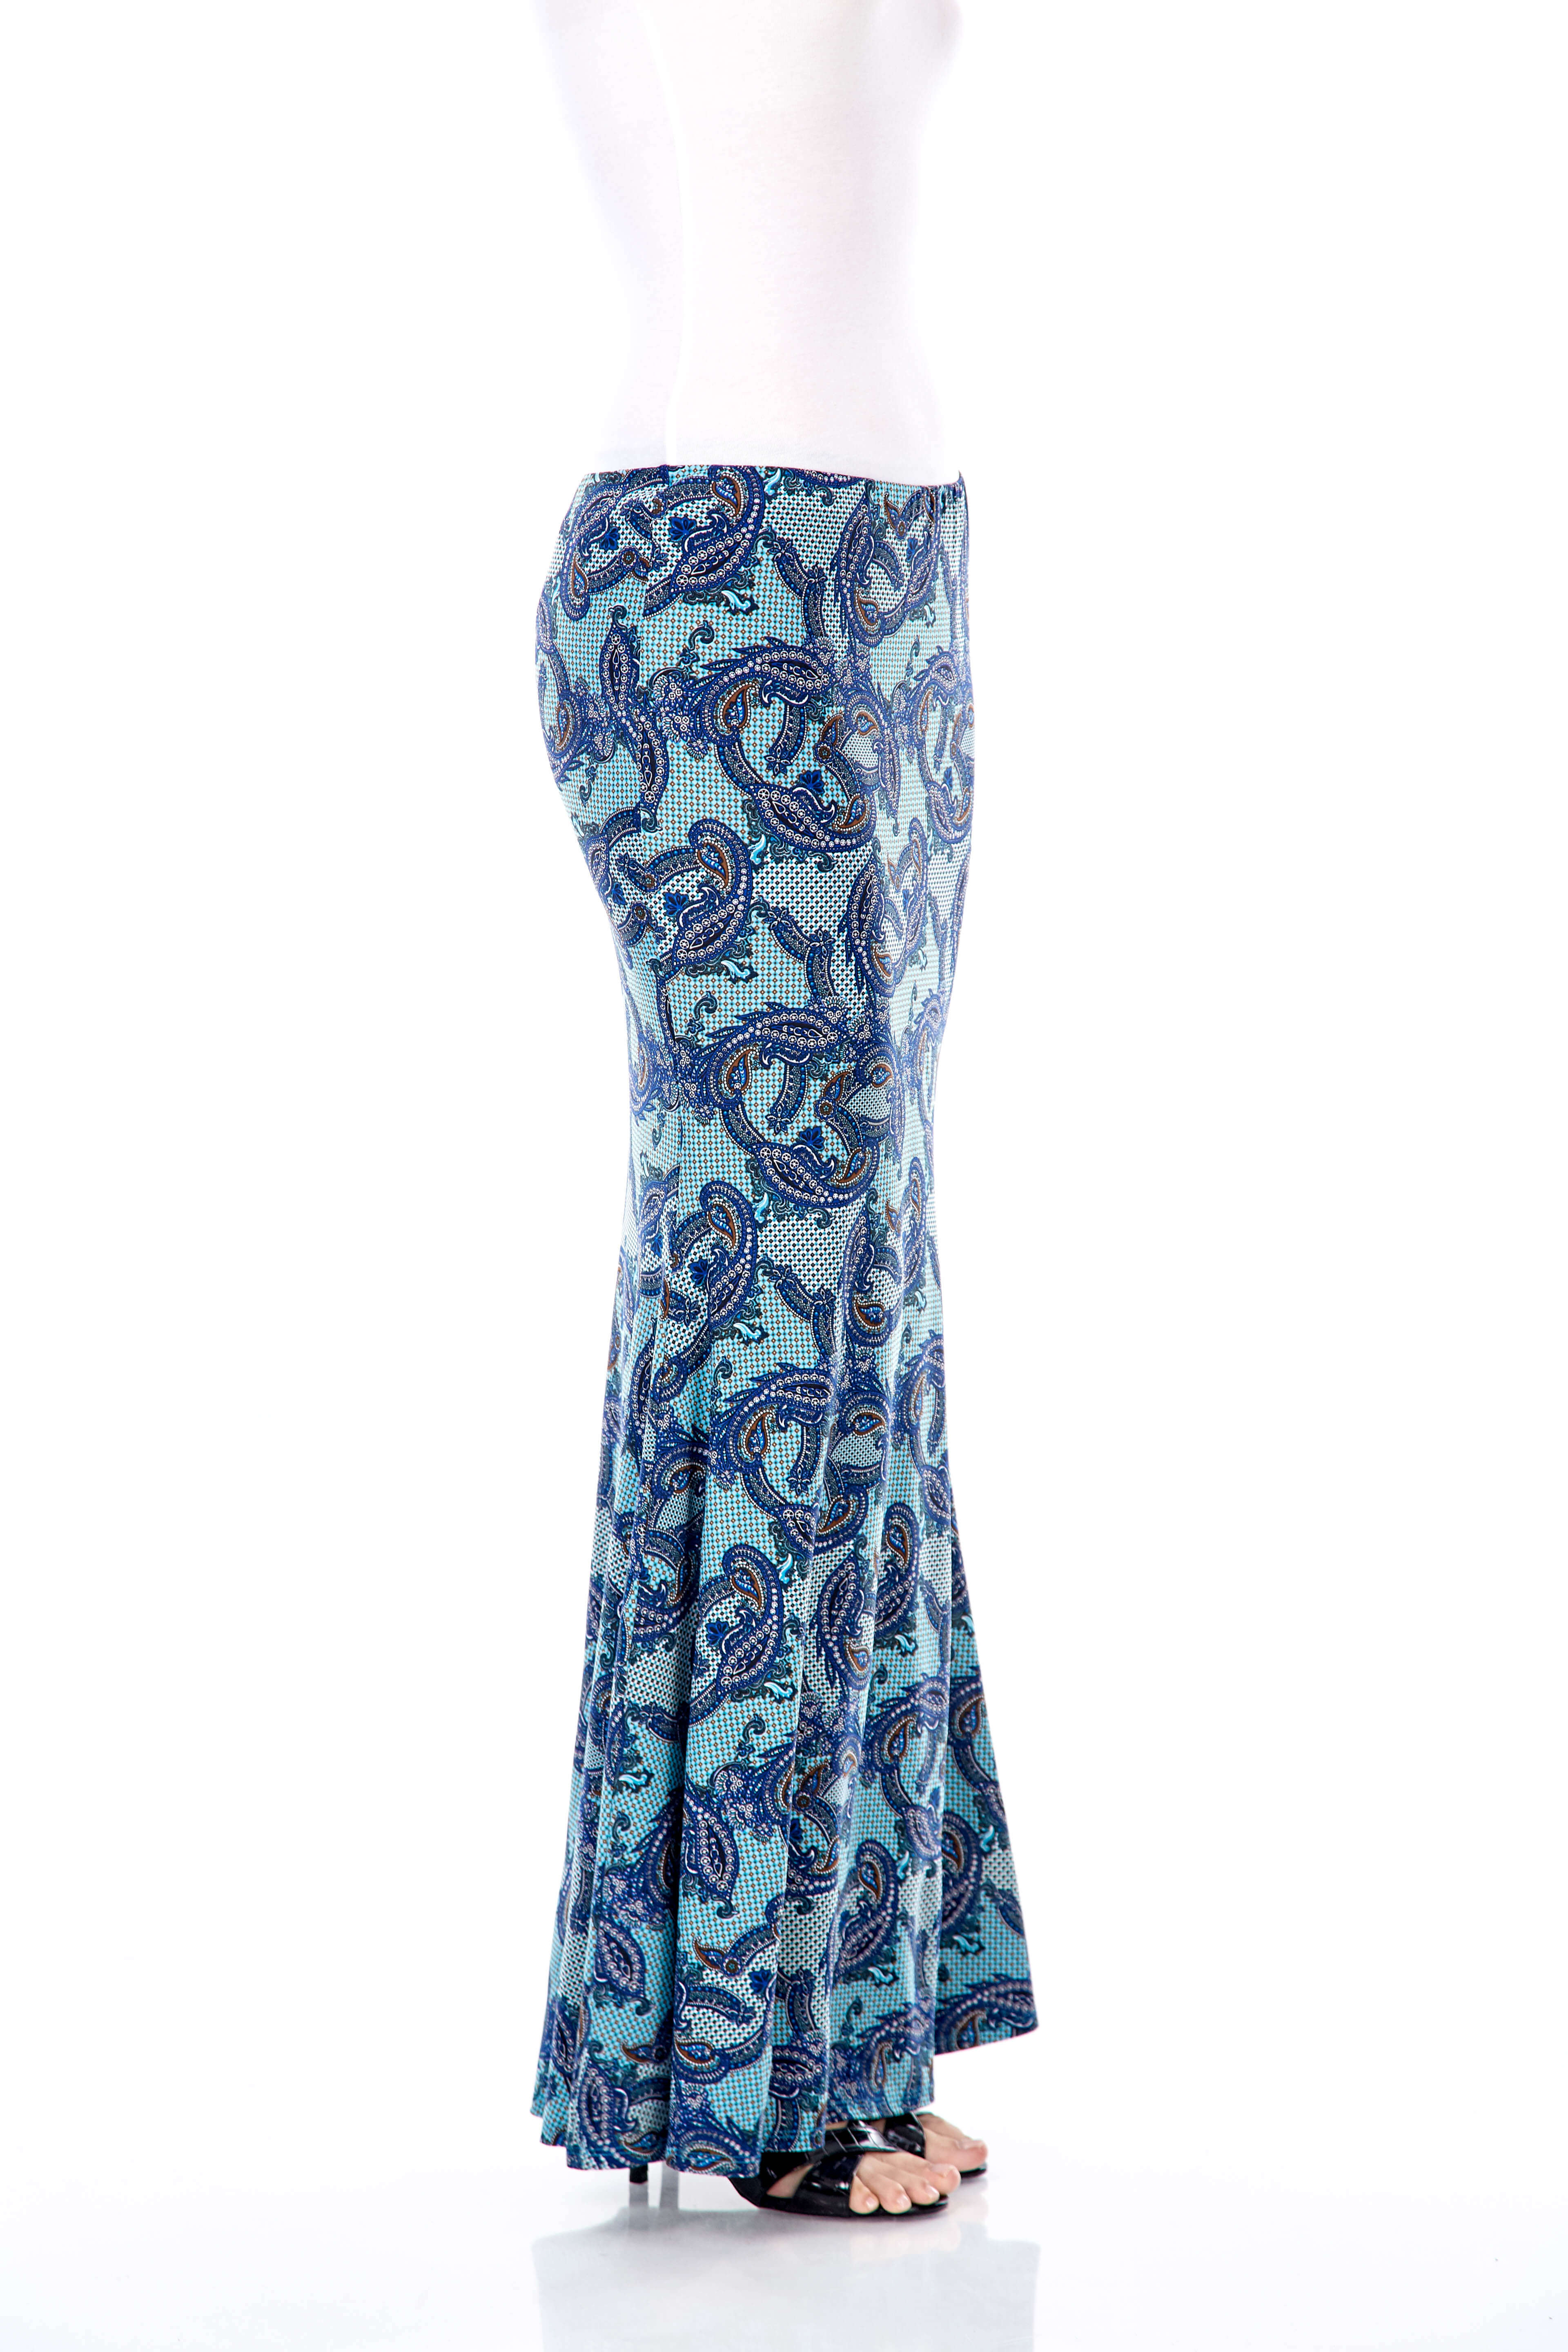 Wilda Turquoise Paisley Skirt (4)